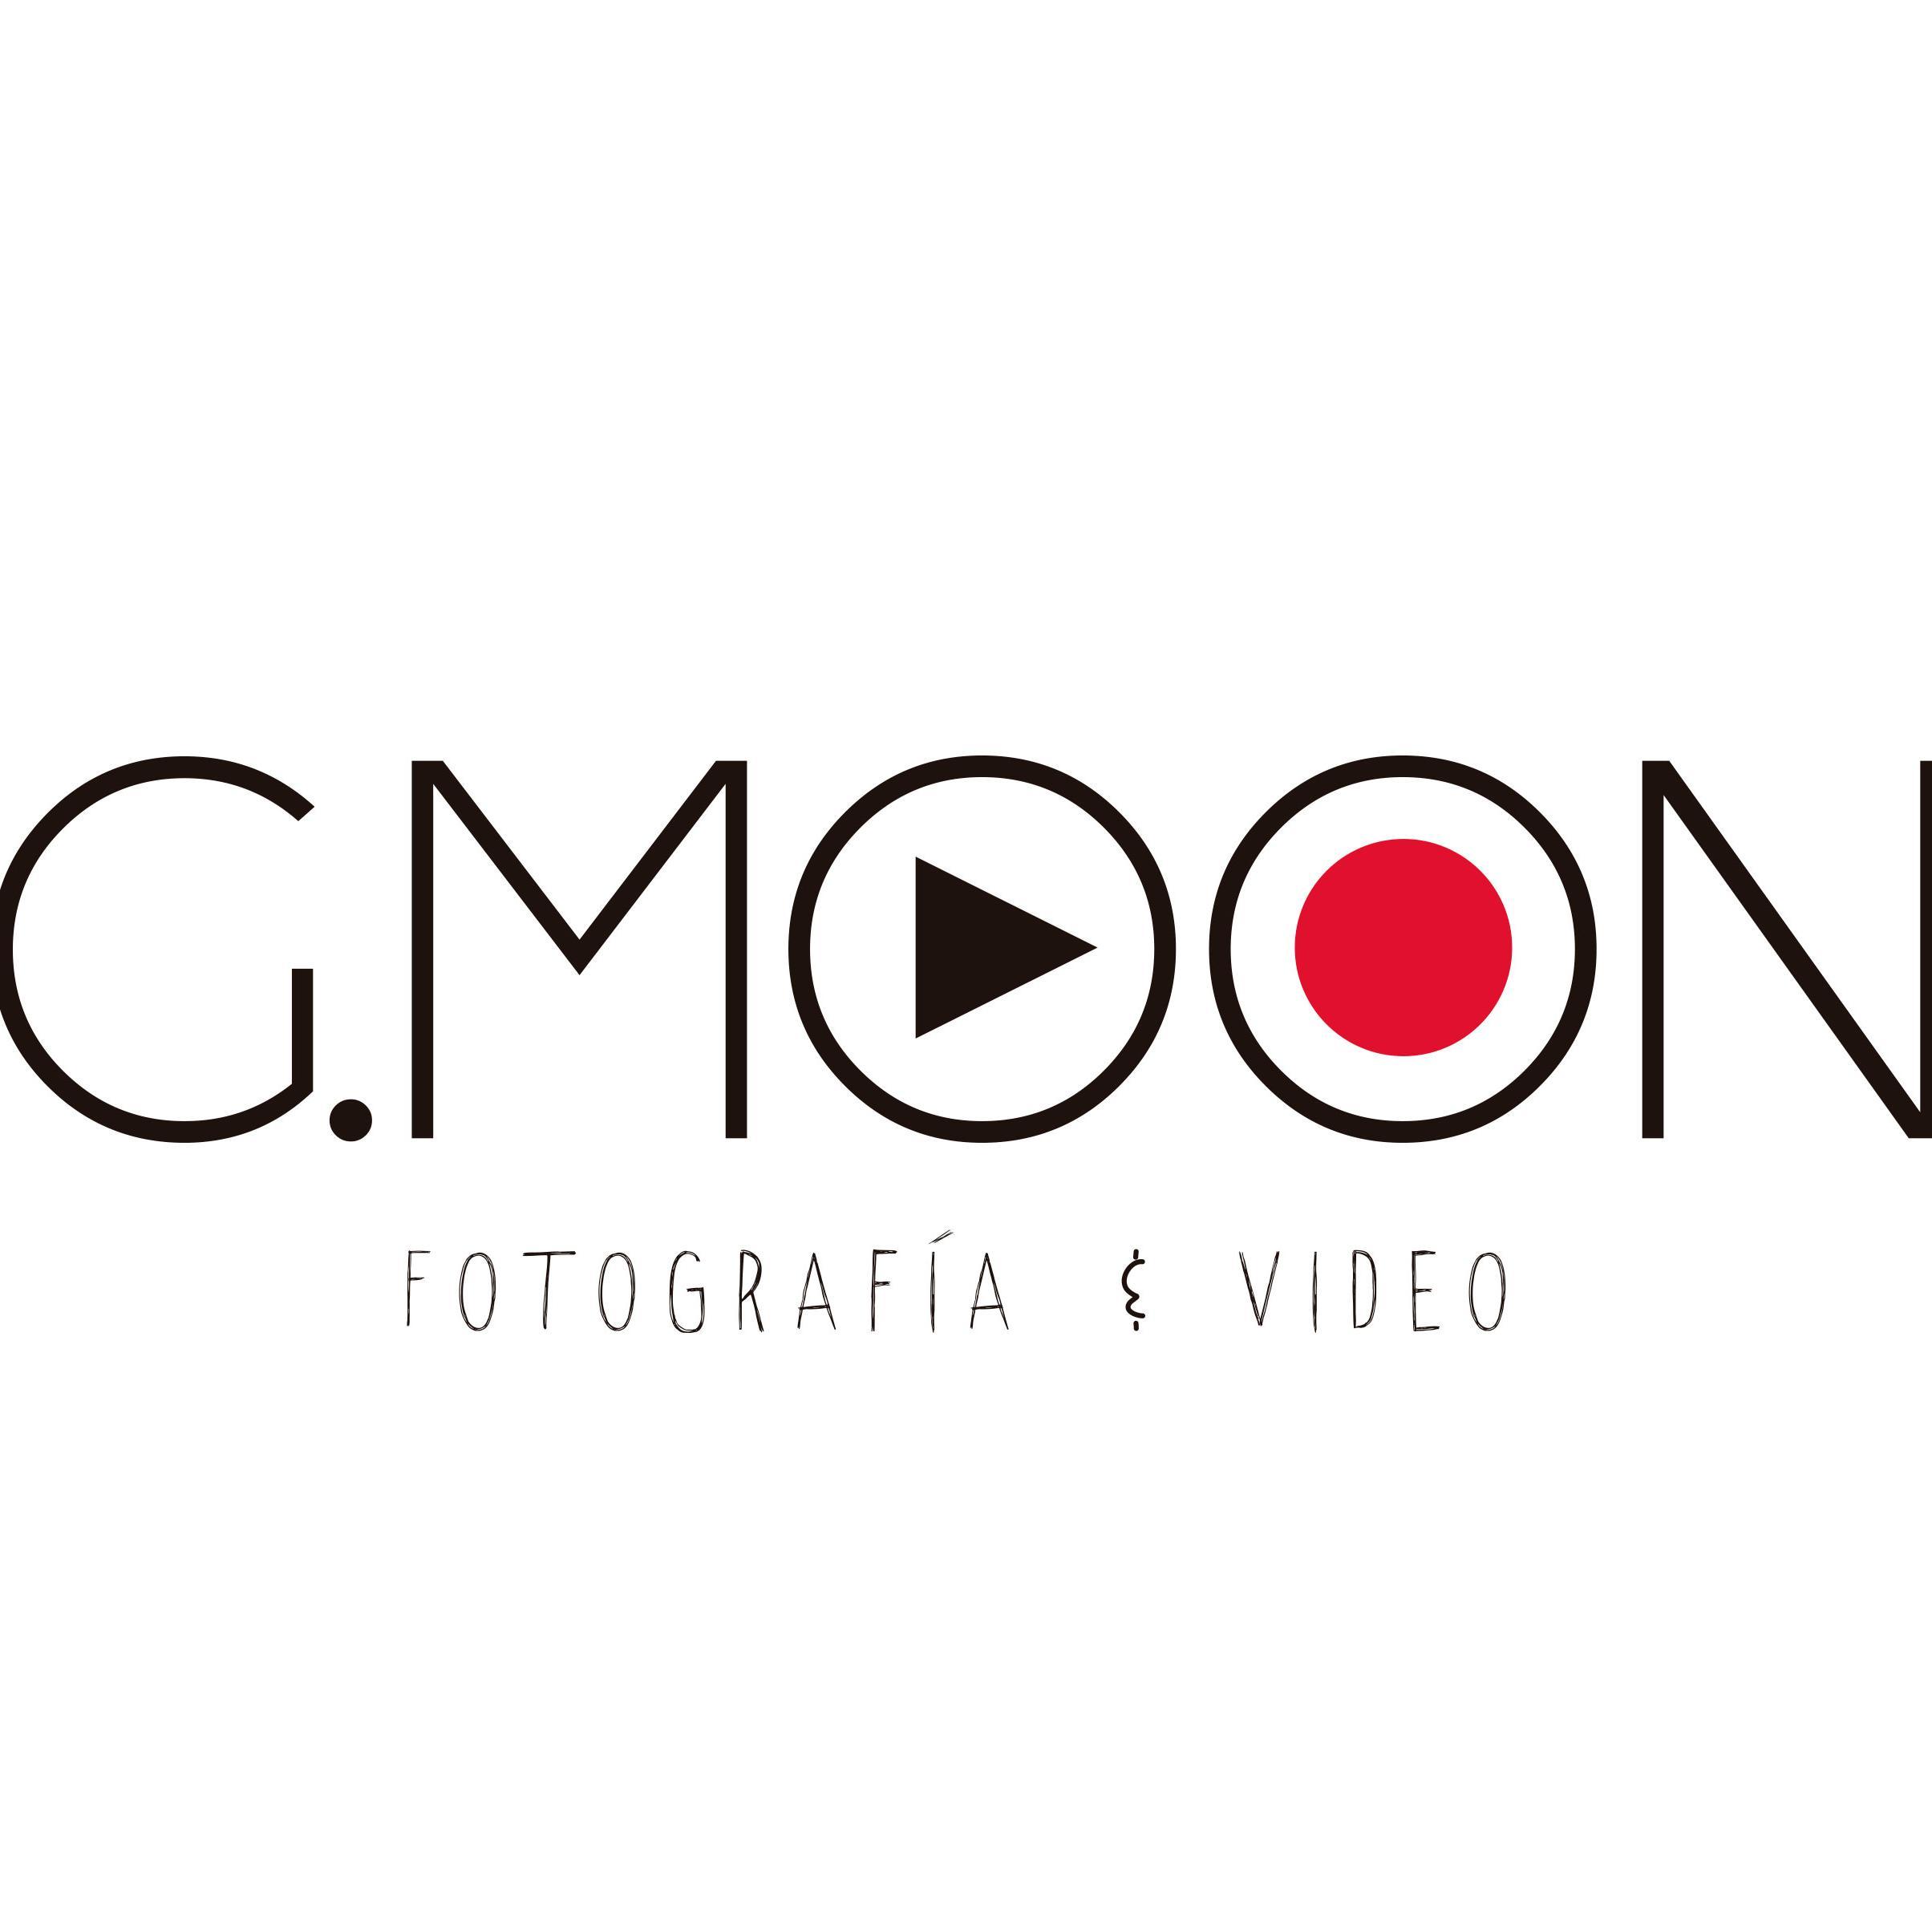 Productora de Imagen dedicada a la Fotografía y Video de publicidad y eventos sociales.
contacto@gmoon.com.mx